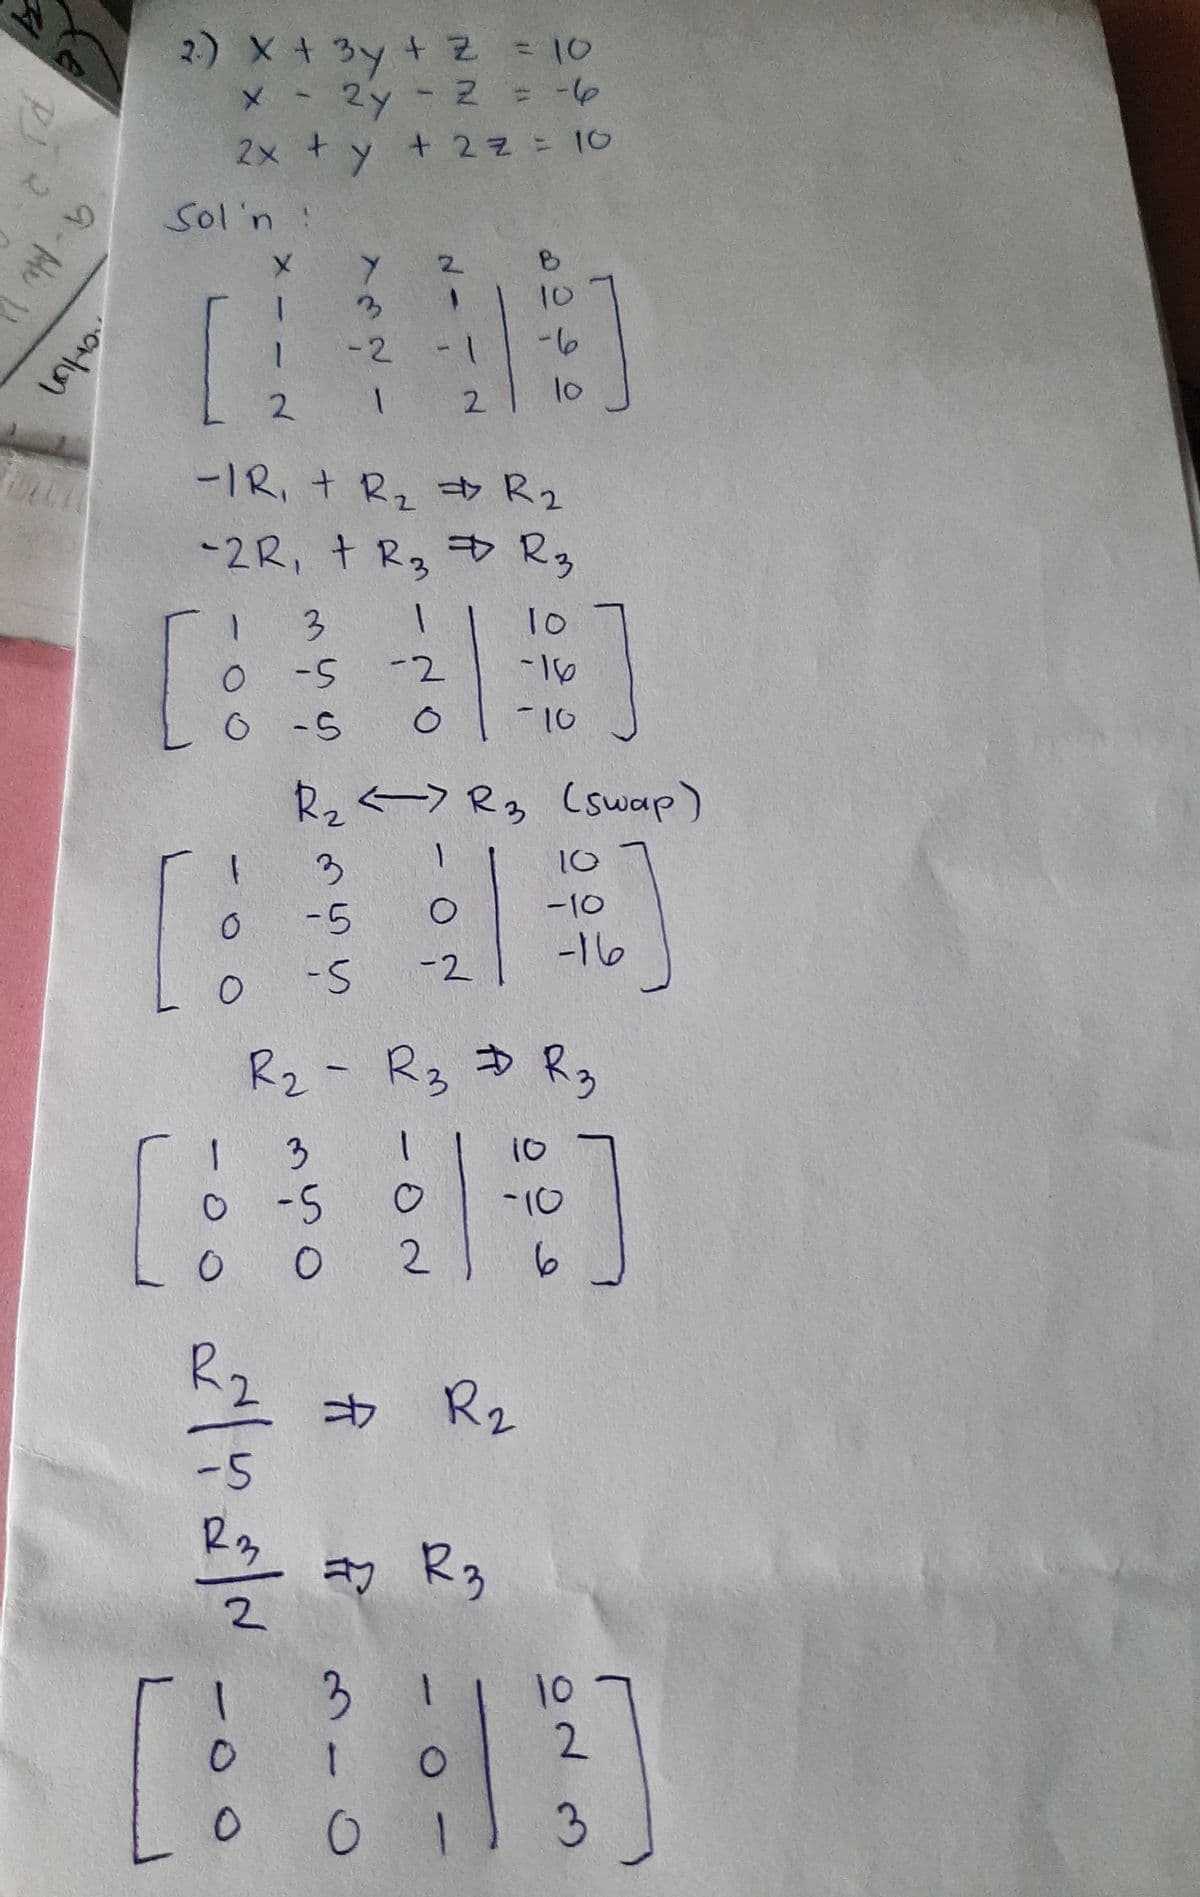 2.) X+ 3y t Z = 10
メ - 2y - 2 = -
2x + y + 2z = 10
Sol'n !
2.
10
-2
-6
10
2 1
2.
ー1R,+ Rz R2
-2R, + R, D Rg
T0
-2
o -S
-10
R2<->Rg (swap)
10
ー10
-5
-16
-2
-5
Rz- Rz D Rg
3
10
o-5
2.
-10
R2
$ Rz
-5
R3
2.
3
10
2.
1
3
12
|
3.
a- Mu
